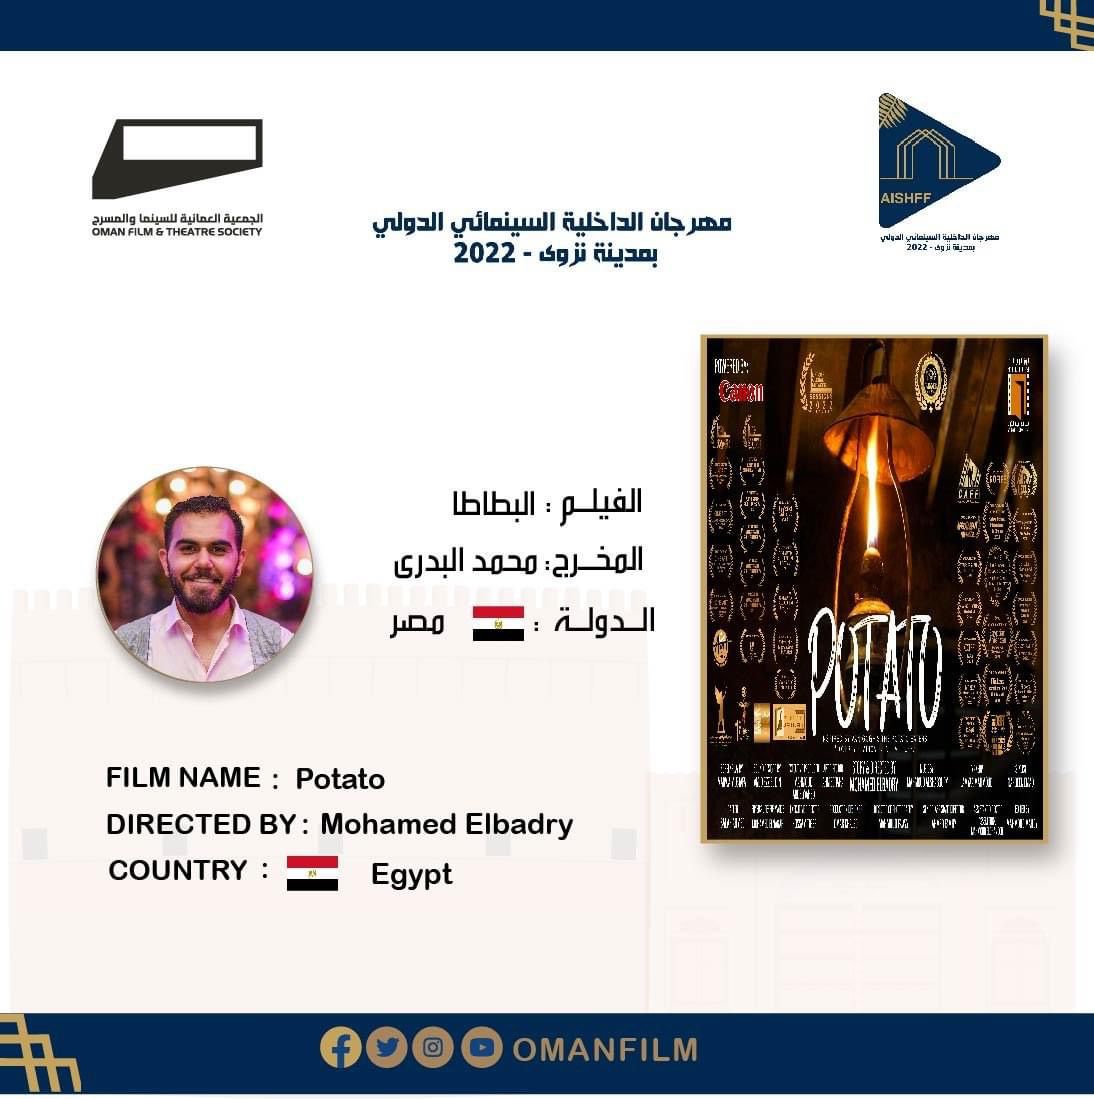 الفيلم المصري بطاطس يشارك في مهرجان السينما الدولي لوزارة الداخلية بعمان (2)